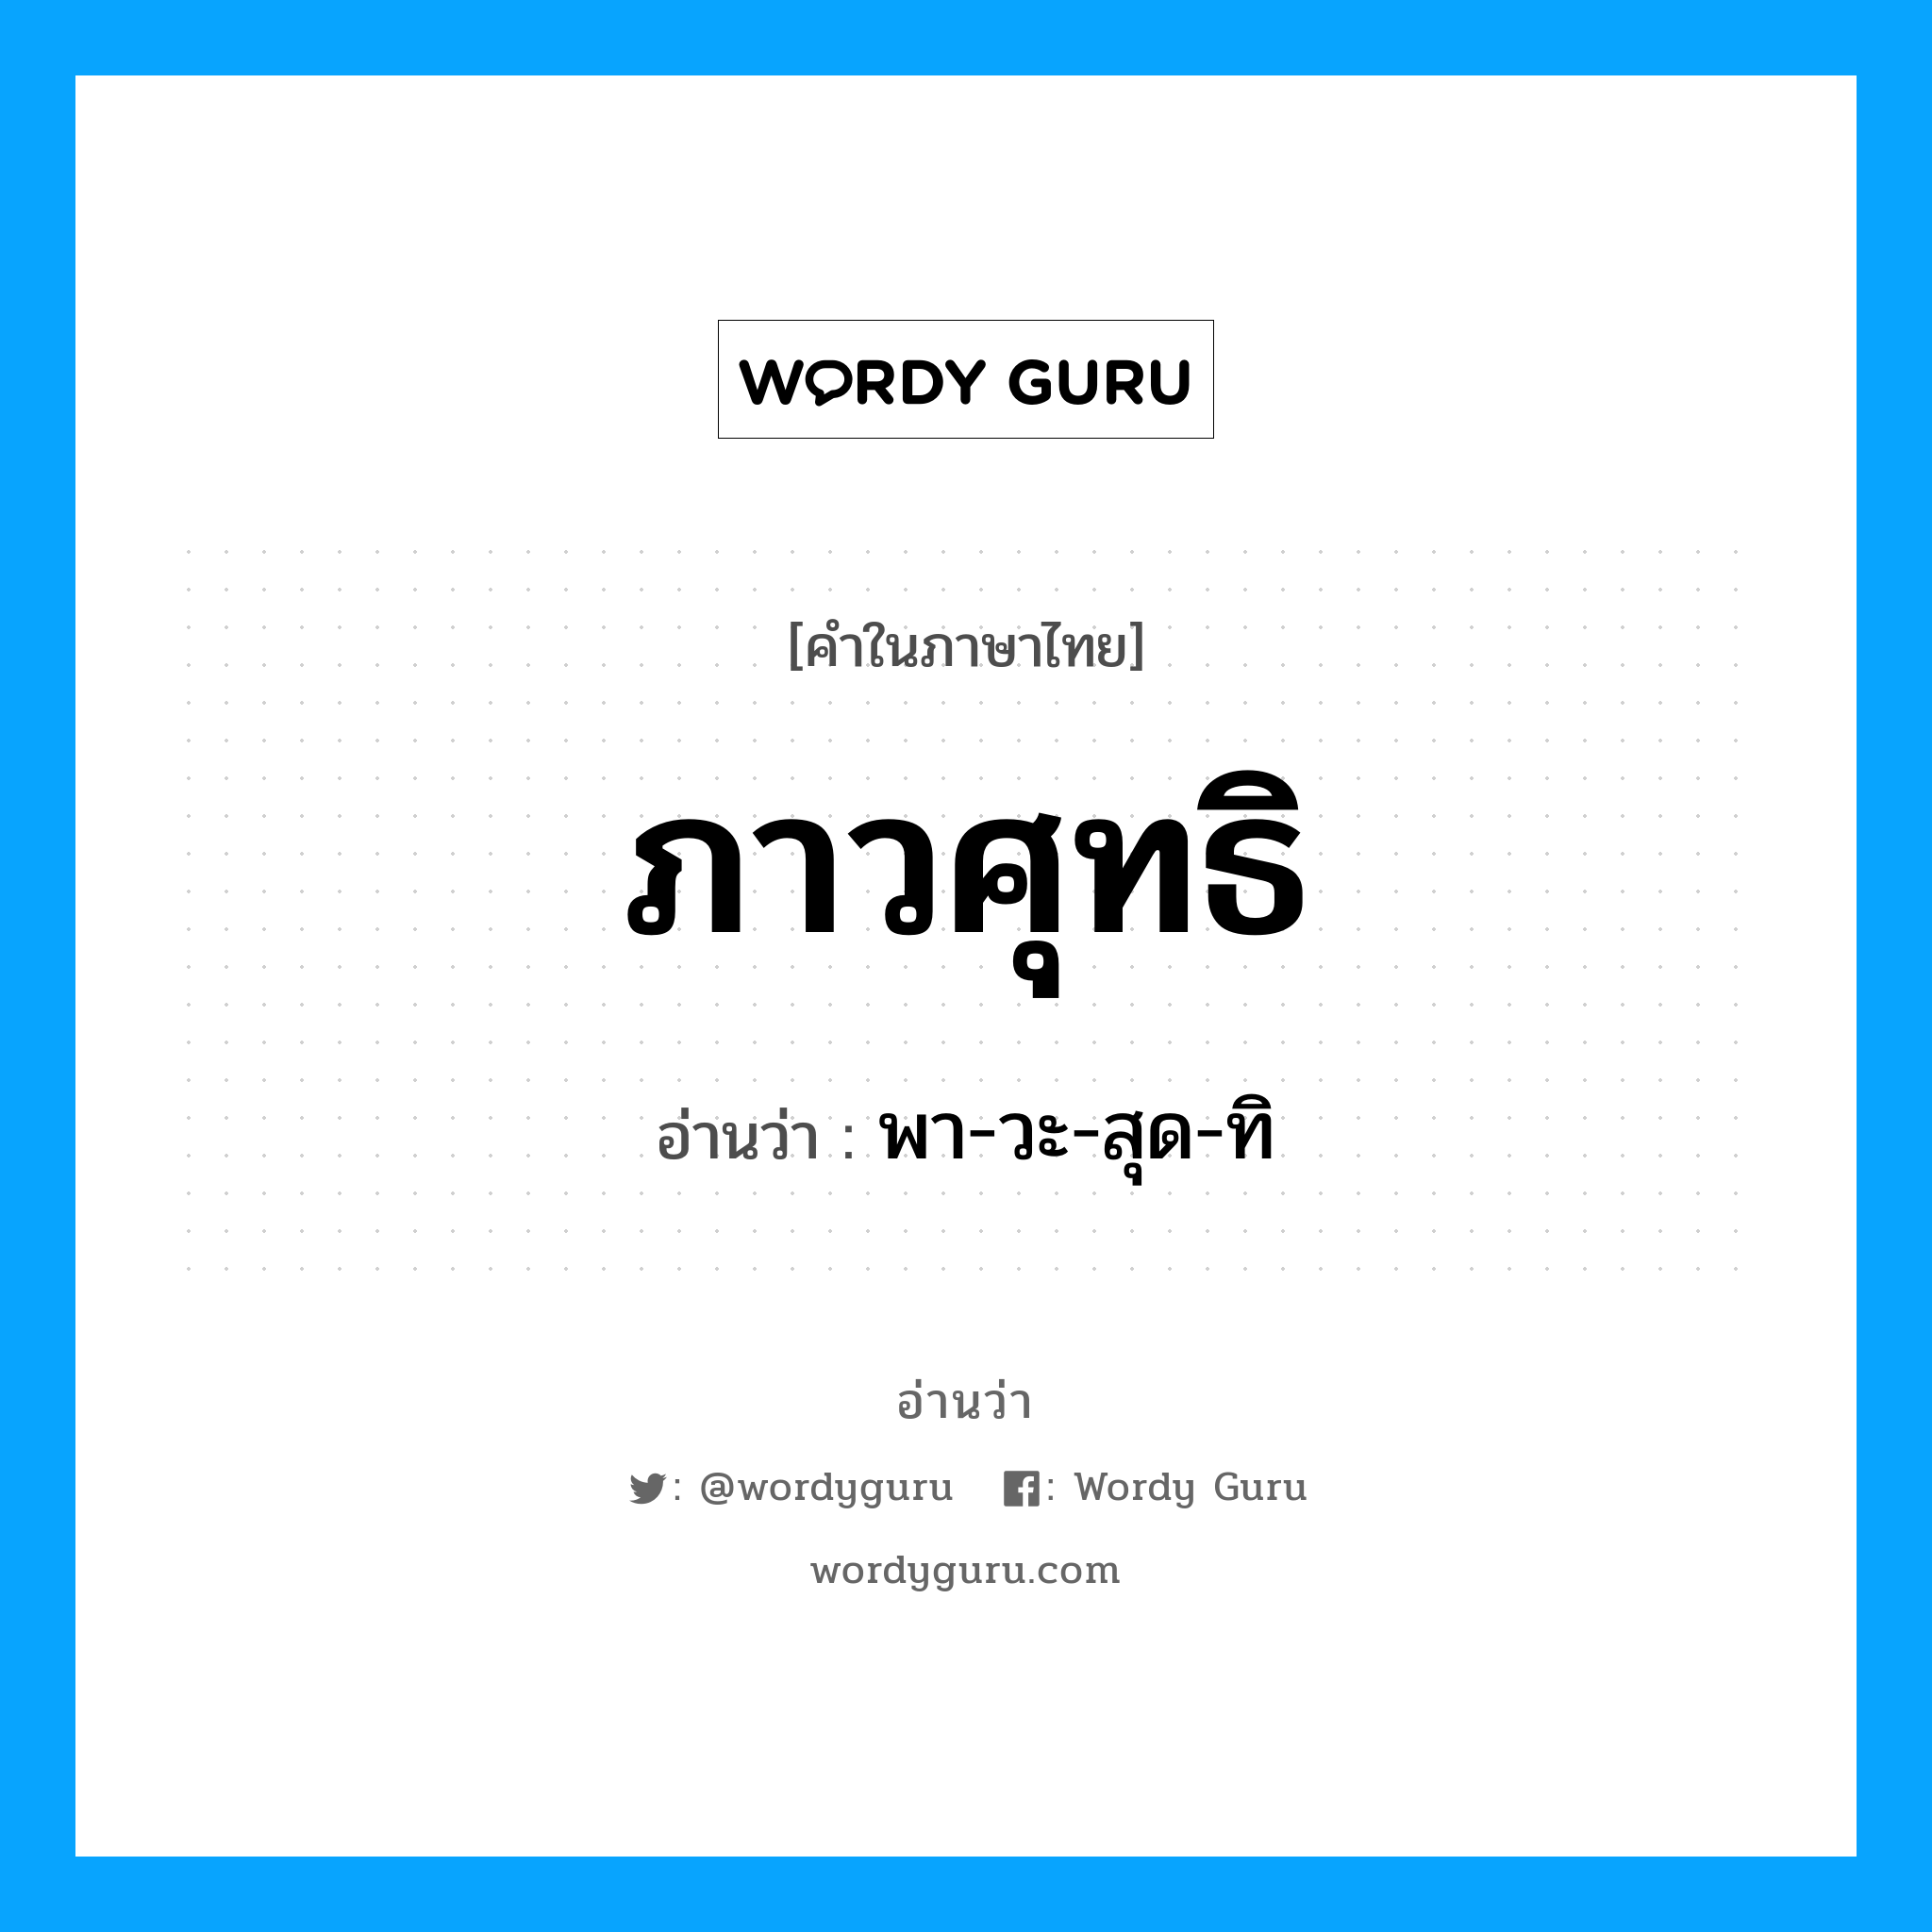 พา-วะ-สุด-ทิ เป็นคำอ่านของคำไหน?, คำในภาษาไทย พา-วะ-สุด-ทิ อ่านว่า ภาวศุทธิ